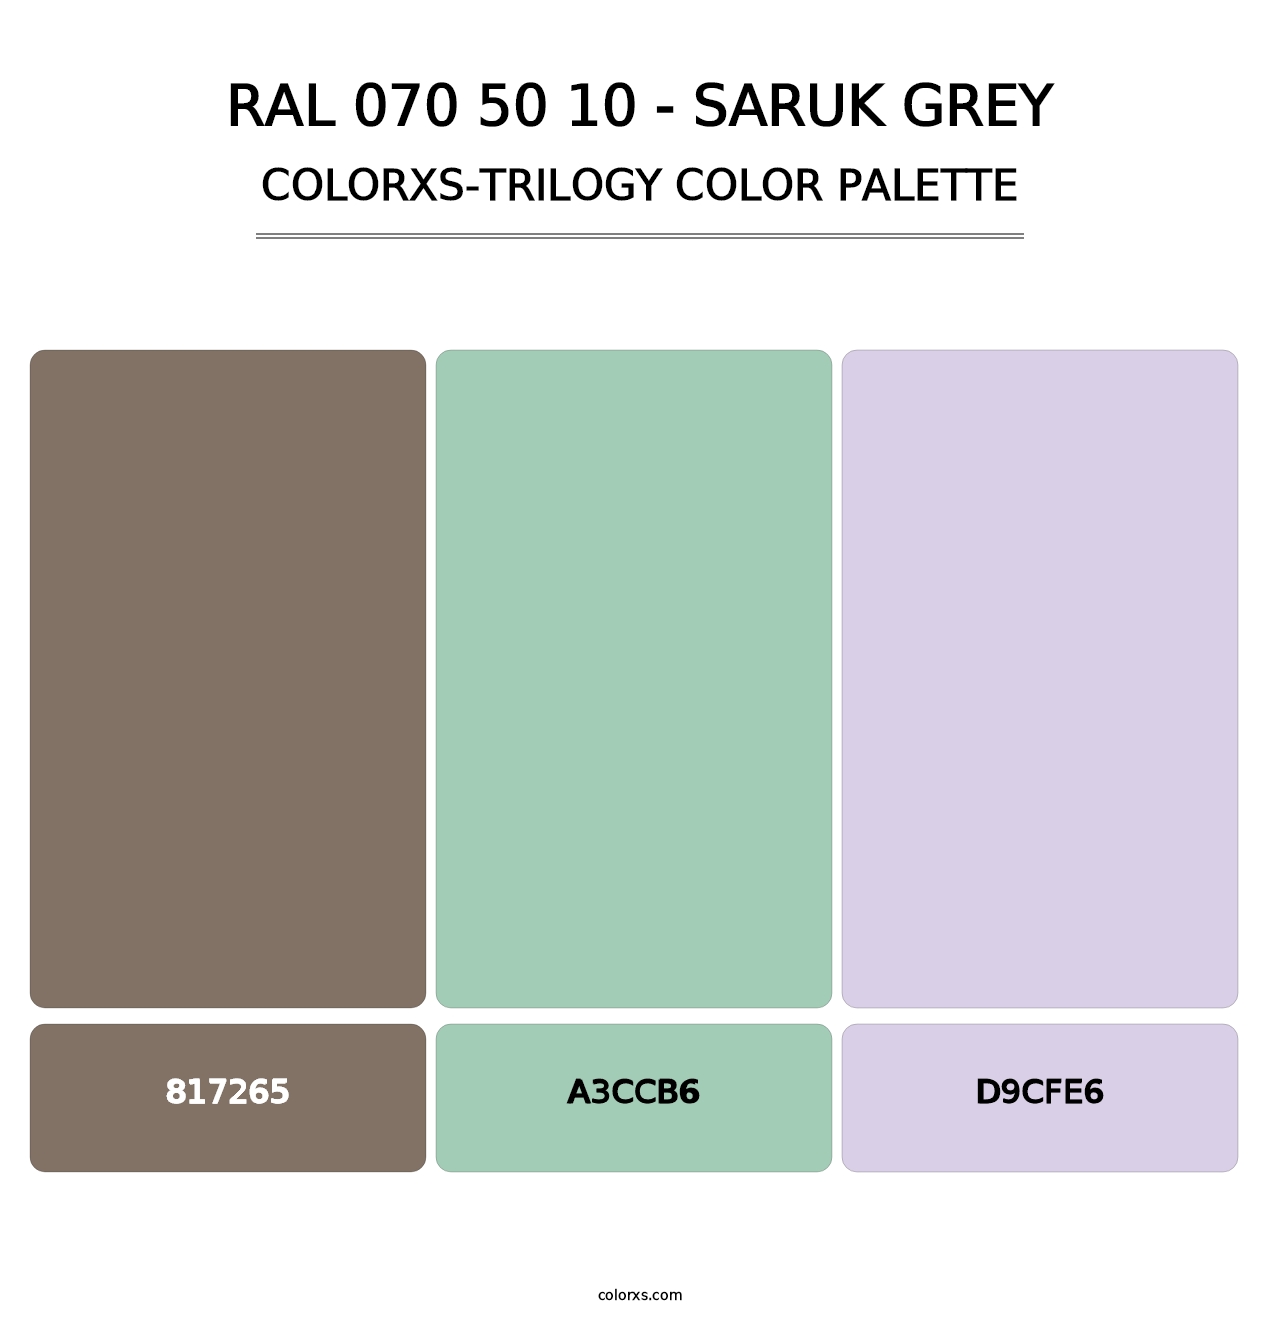 RAL 070 50 10 - Saruk Grey - Colorxs Trilogy Palette